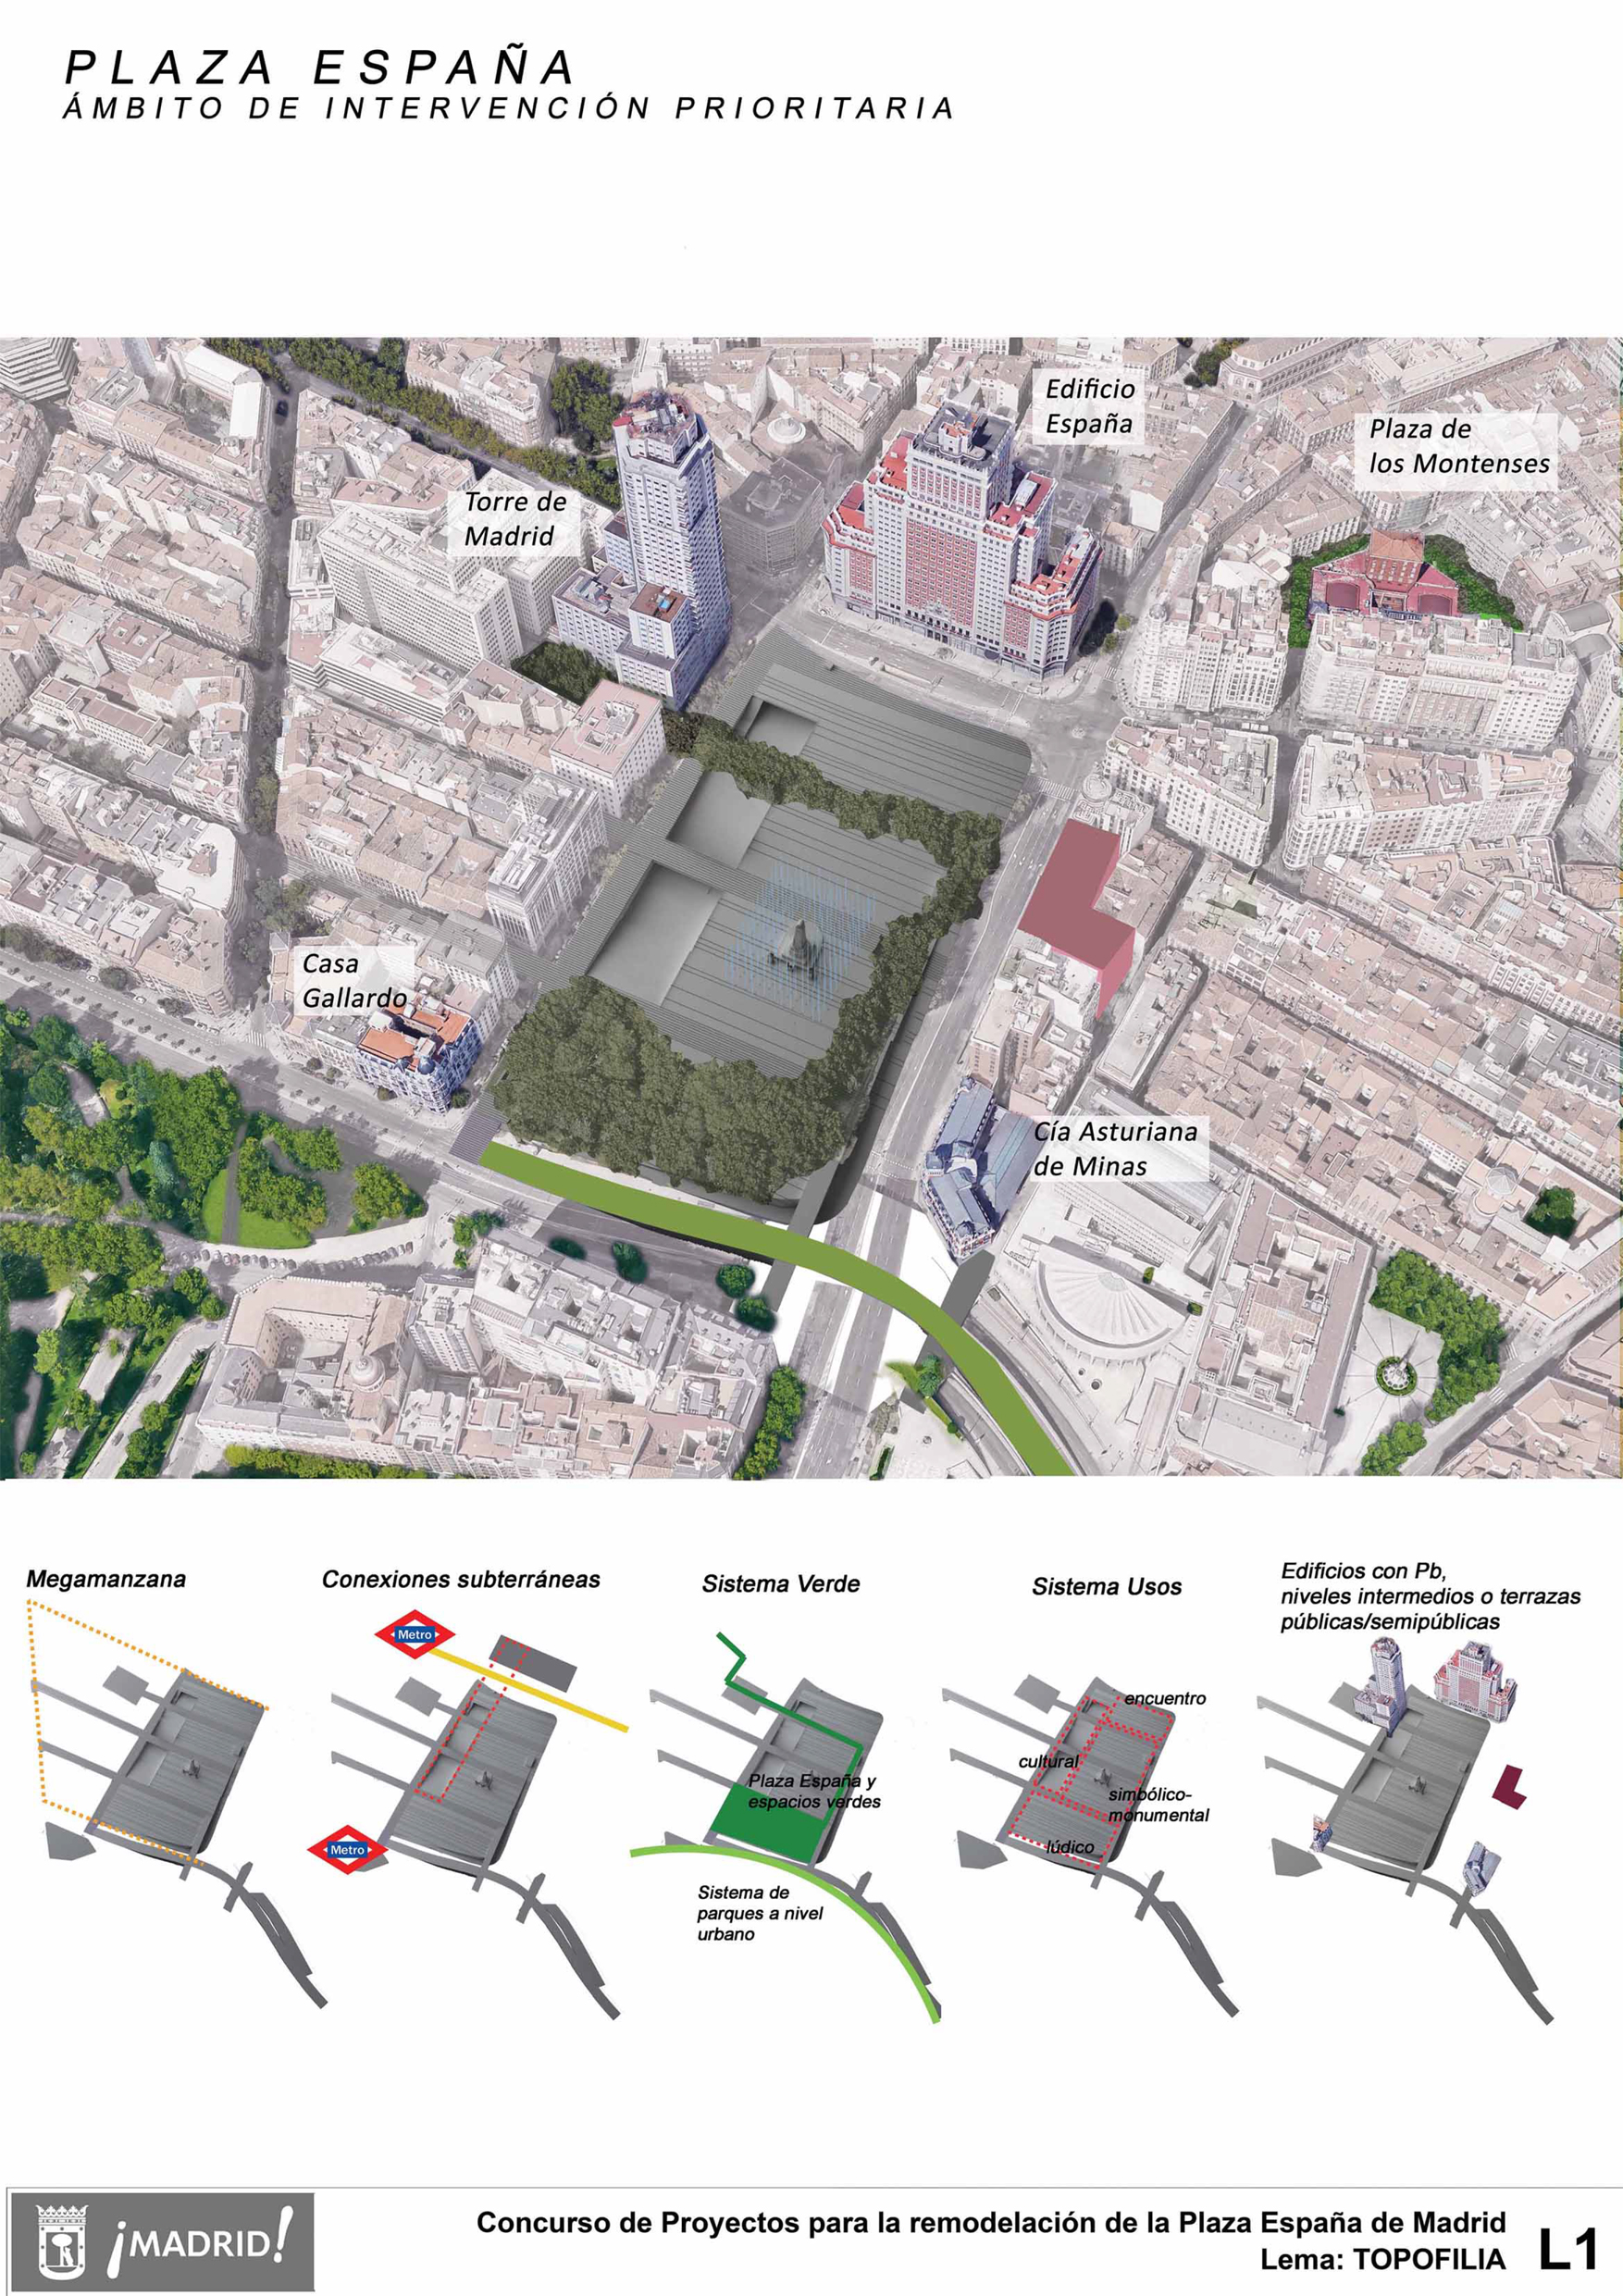 Proyecto 51 para la Remodelación de Plaza España: TOPOFILIA